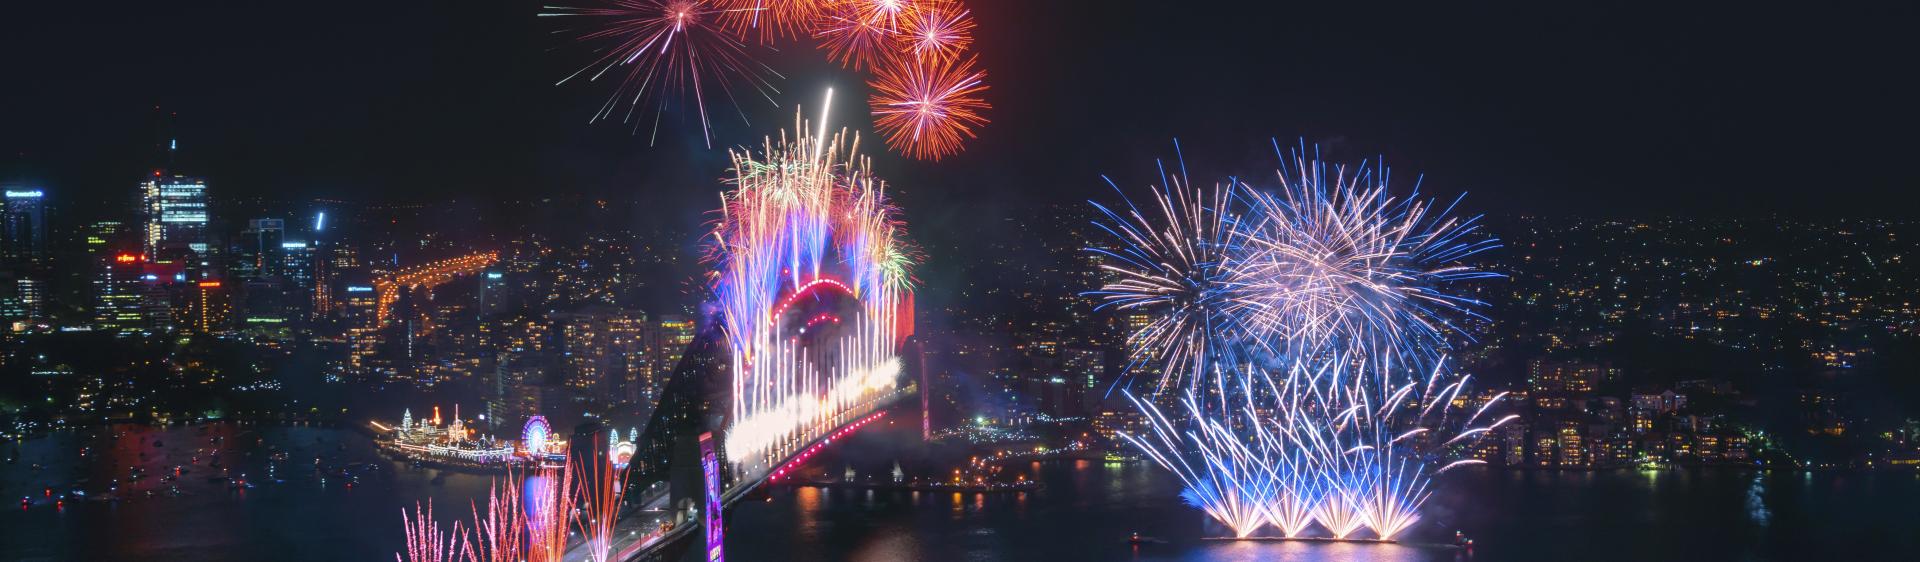 壯觀的午夜煙花匯演遍布悉尼海港在慶祝新的一年的開始2020 ， 悉尼